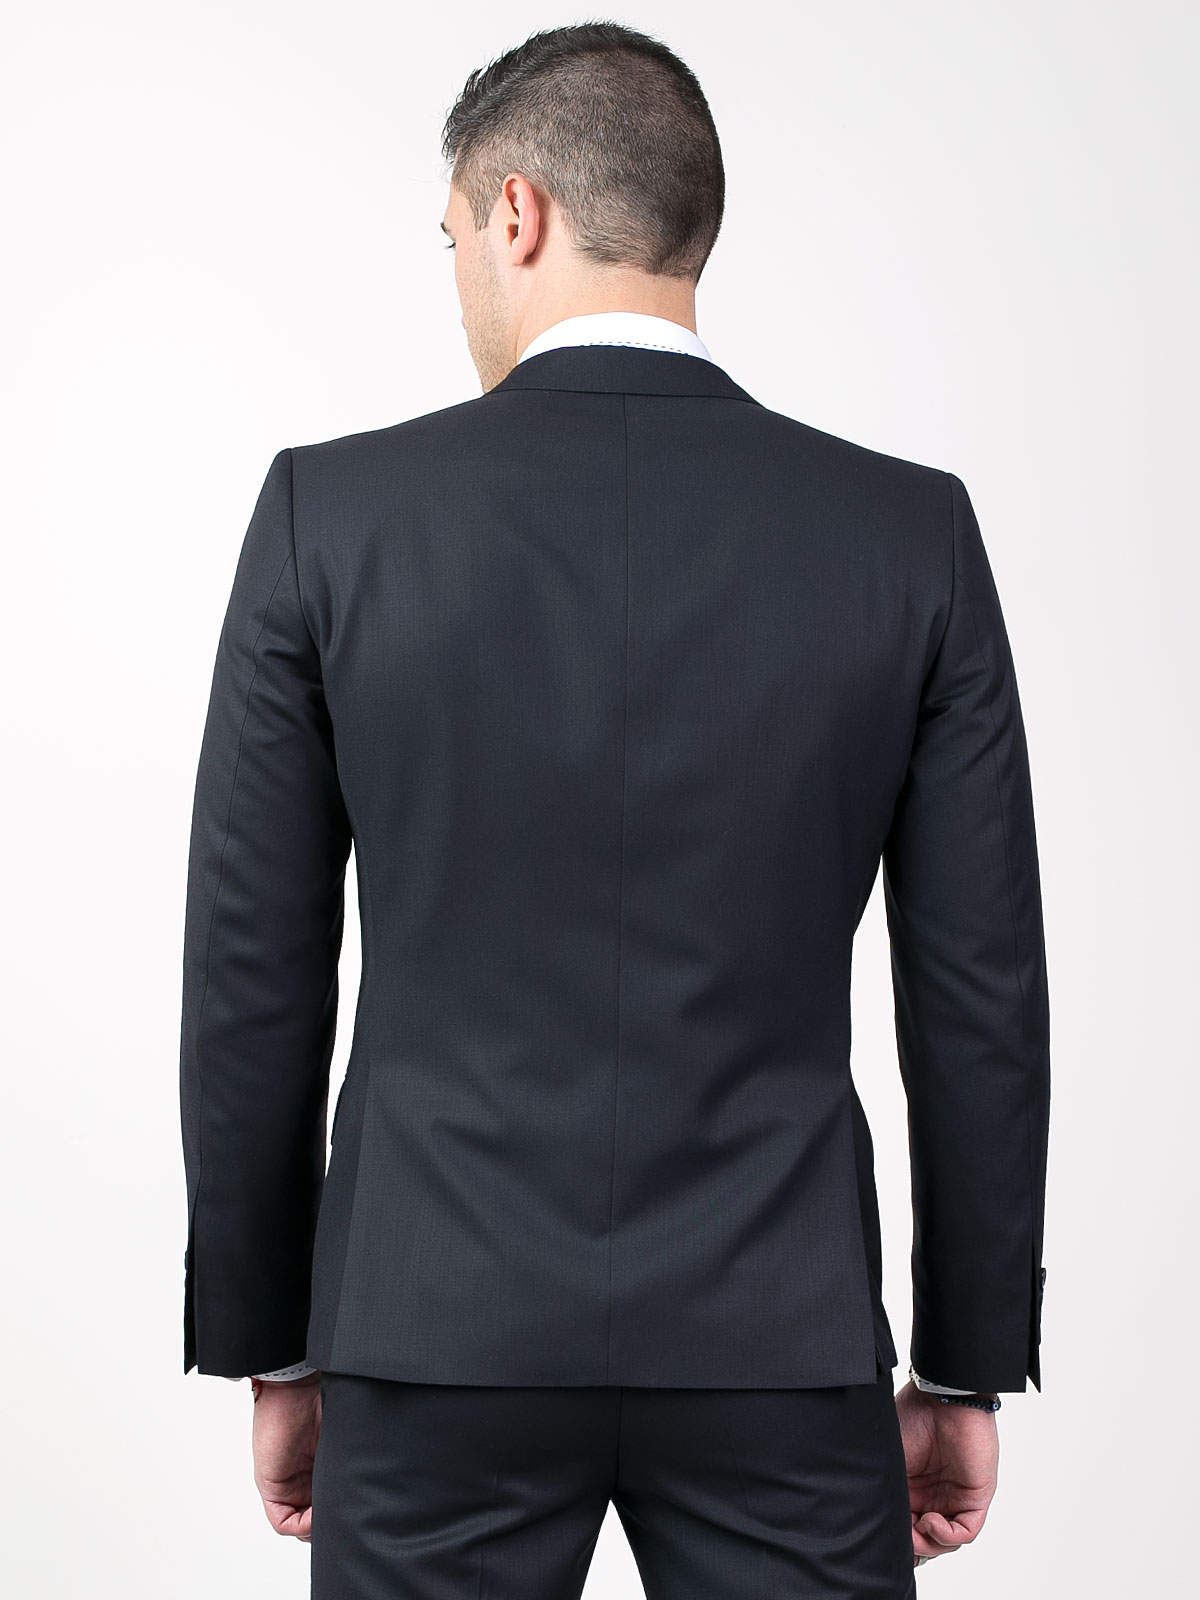 Elegant jacket with two slits - 64027 € 61.30 img3